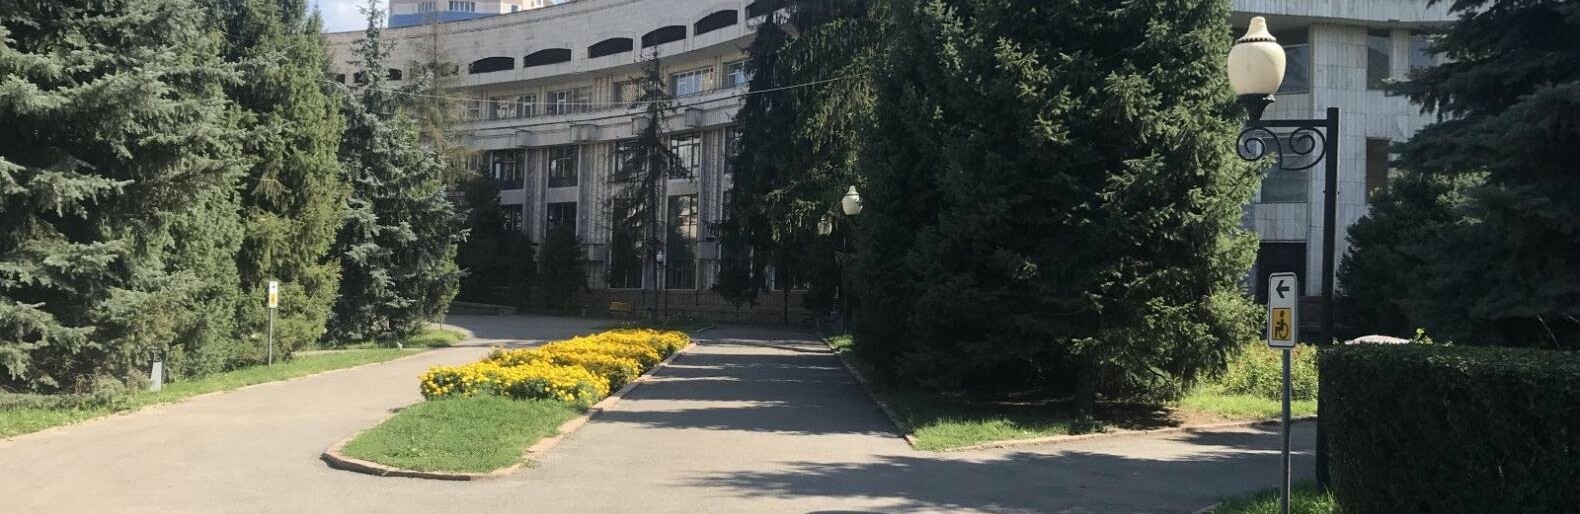 Как благоустроят сквер у Дворца школьников в Алматы, рассказали в акимате